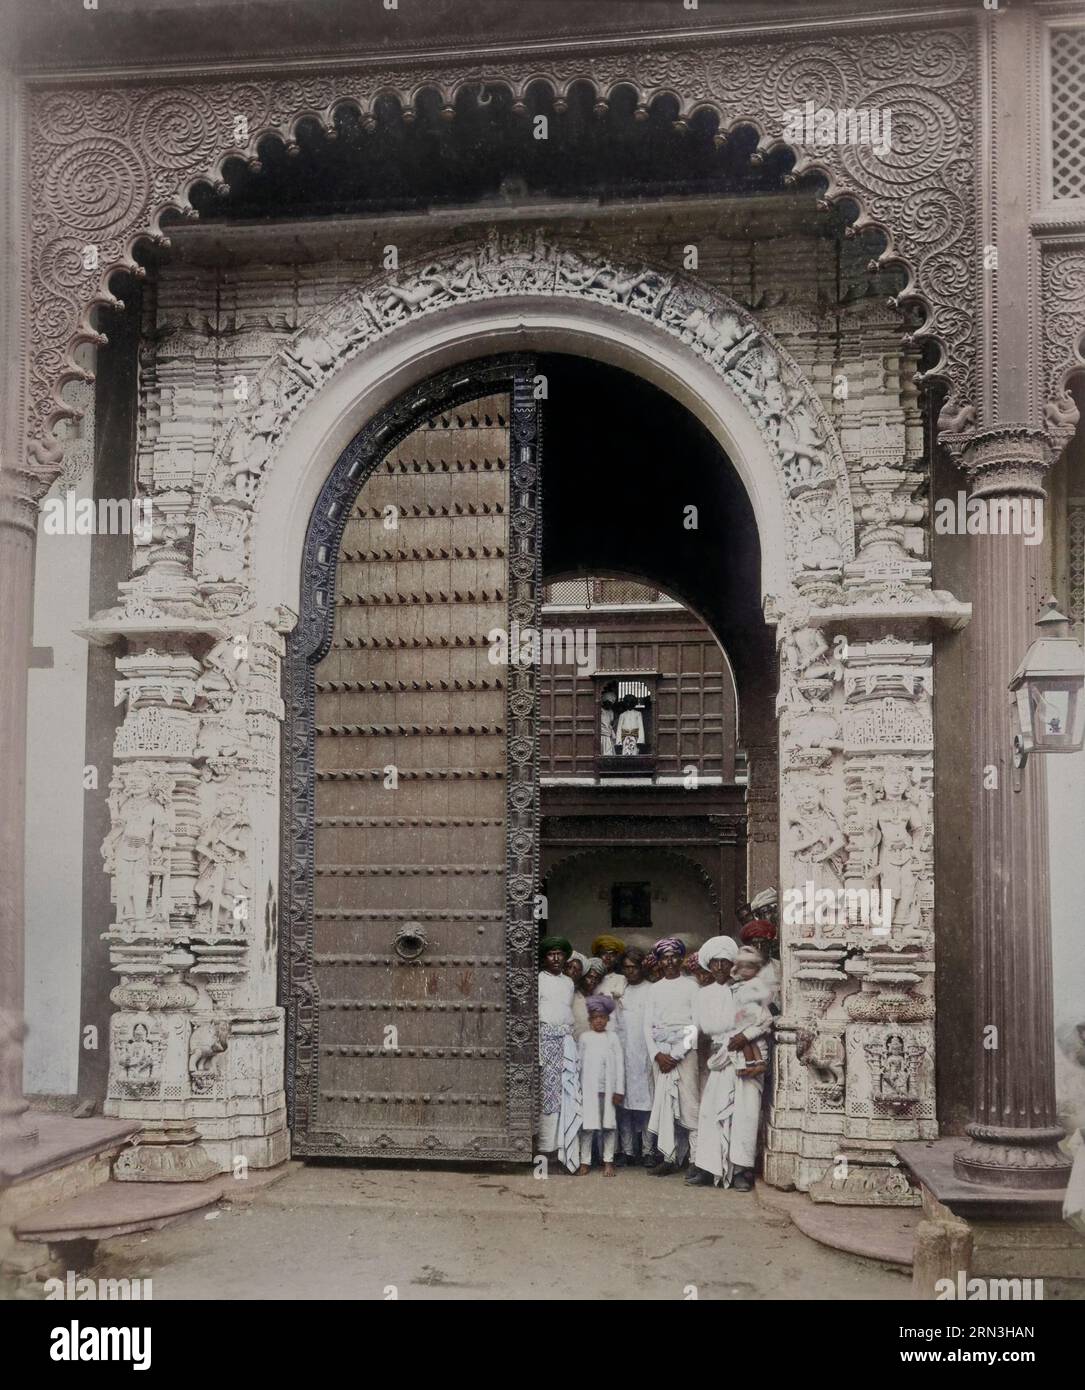 Old Darbar Gateway; 1886 - 1889. Silberfarbener Albumdruck. Teil des "Bhavnagar"- Fotokompendiums. Ansichten und Architekturstudien von Bhavnagar, Indien Stockfoto